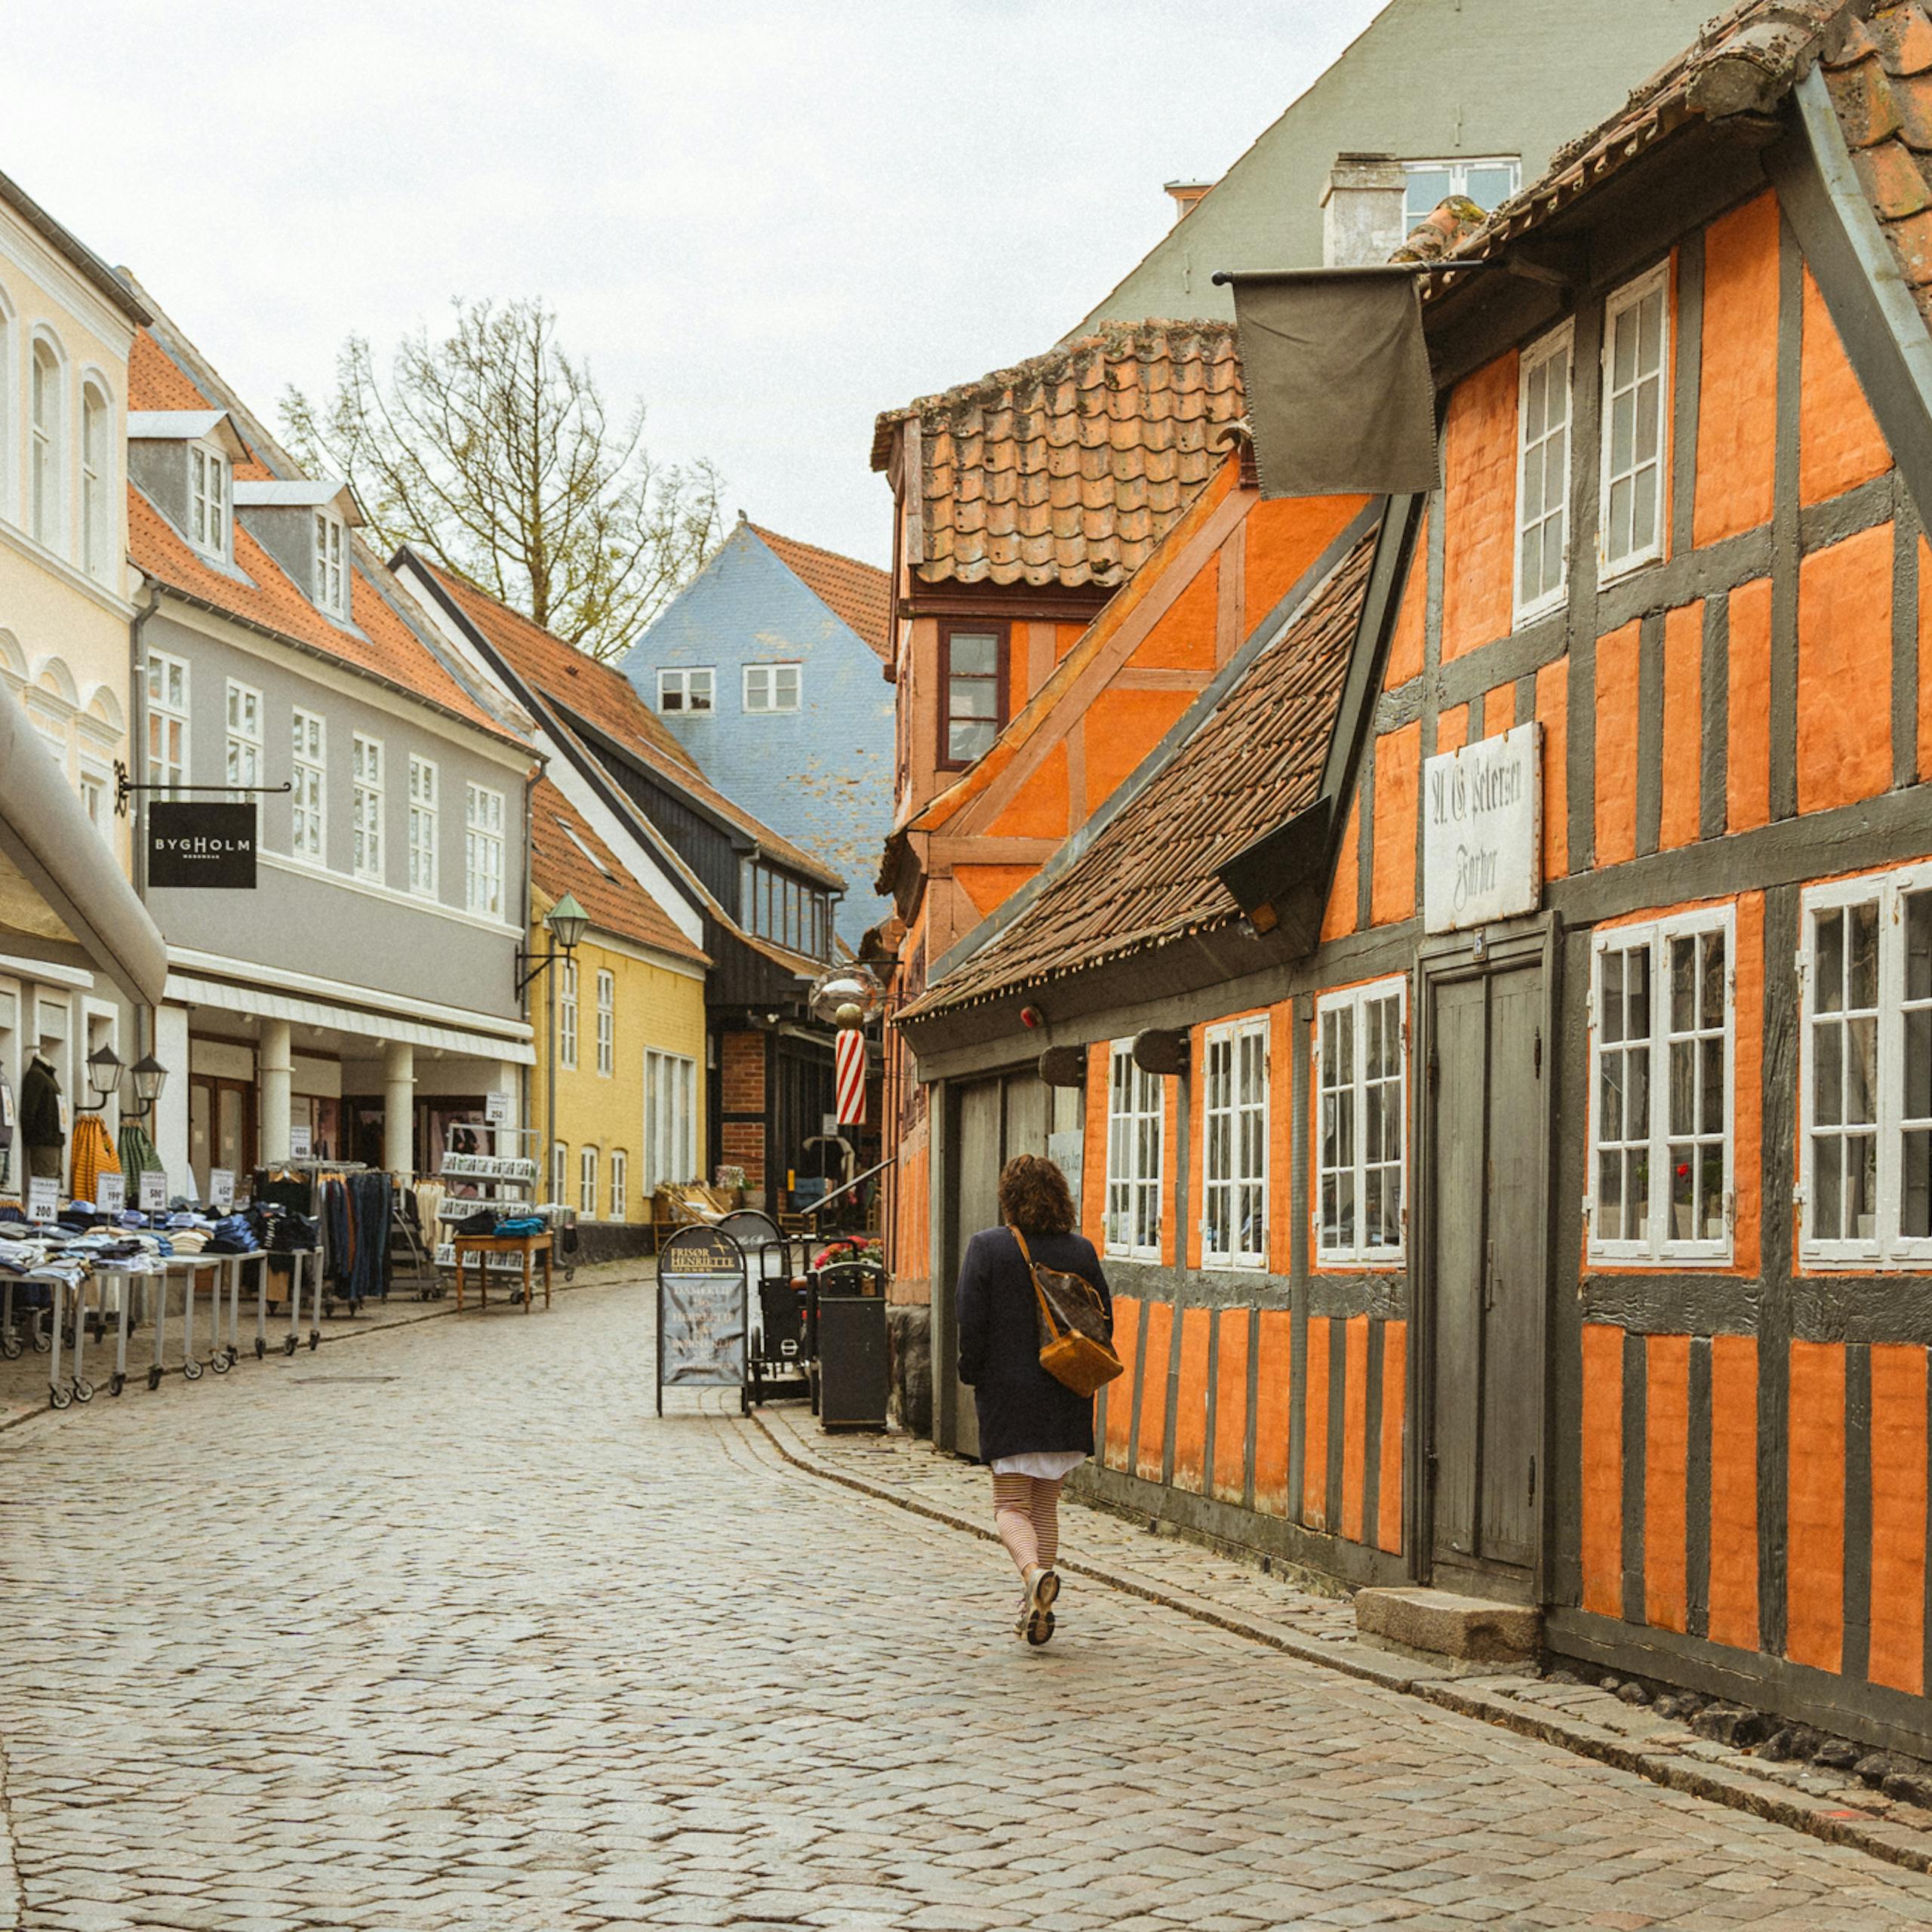  Oplev Danmarks hyggeligste købstæder: Historien bag de gamle handelsbyer på Djursland